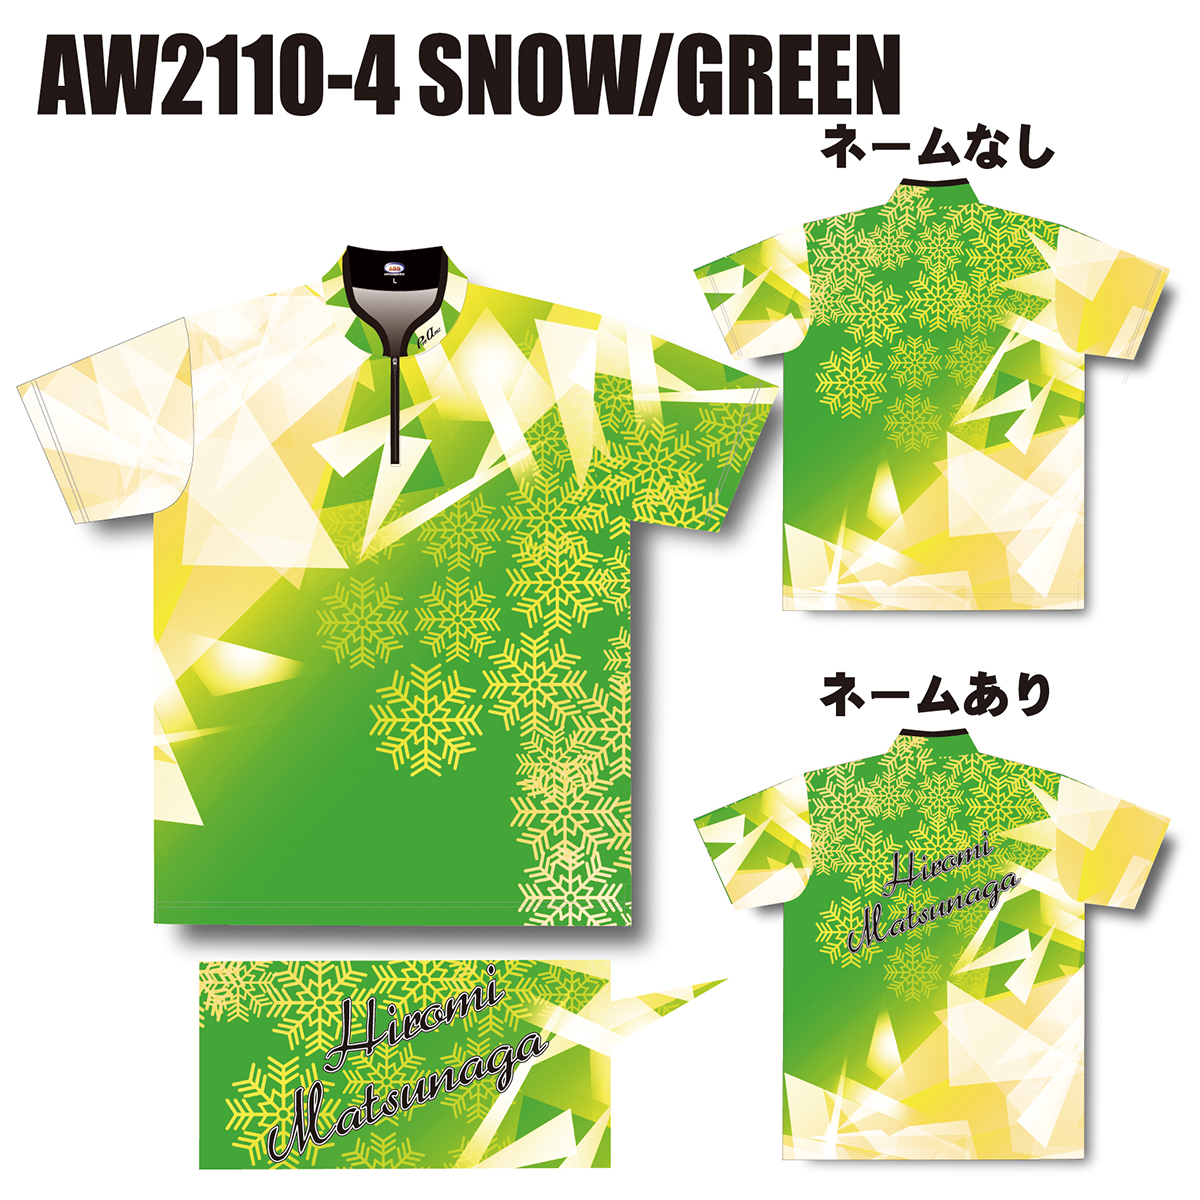 2021ウインターモデル(AW2110-4 SNOW/GREEN)